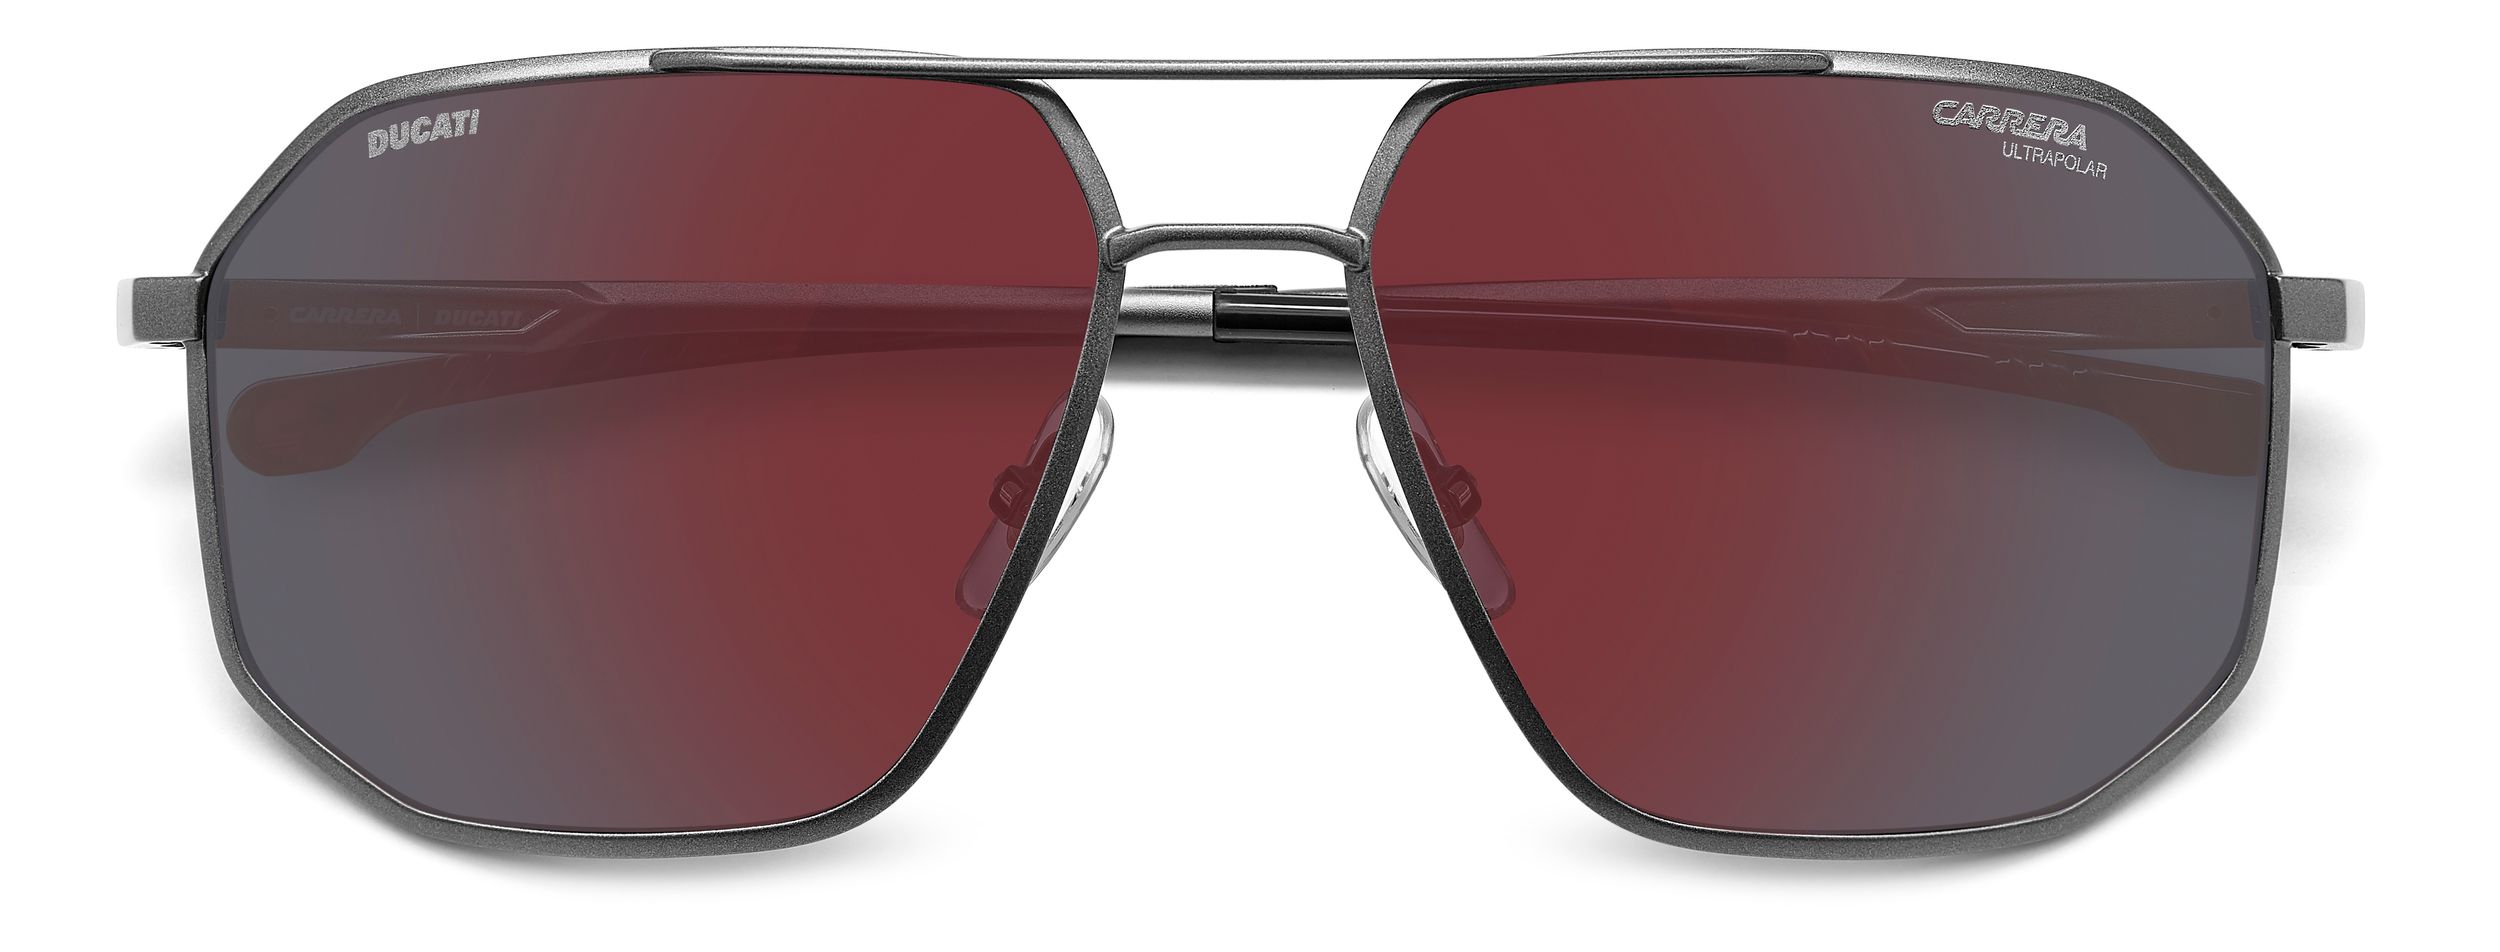 Image of Carrera Ducatti 037/S Men's Sunglasses